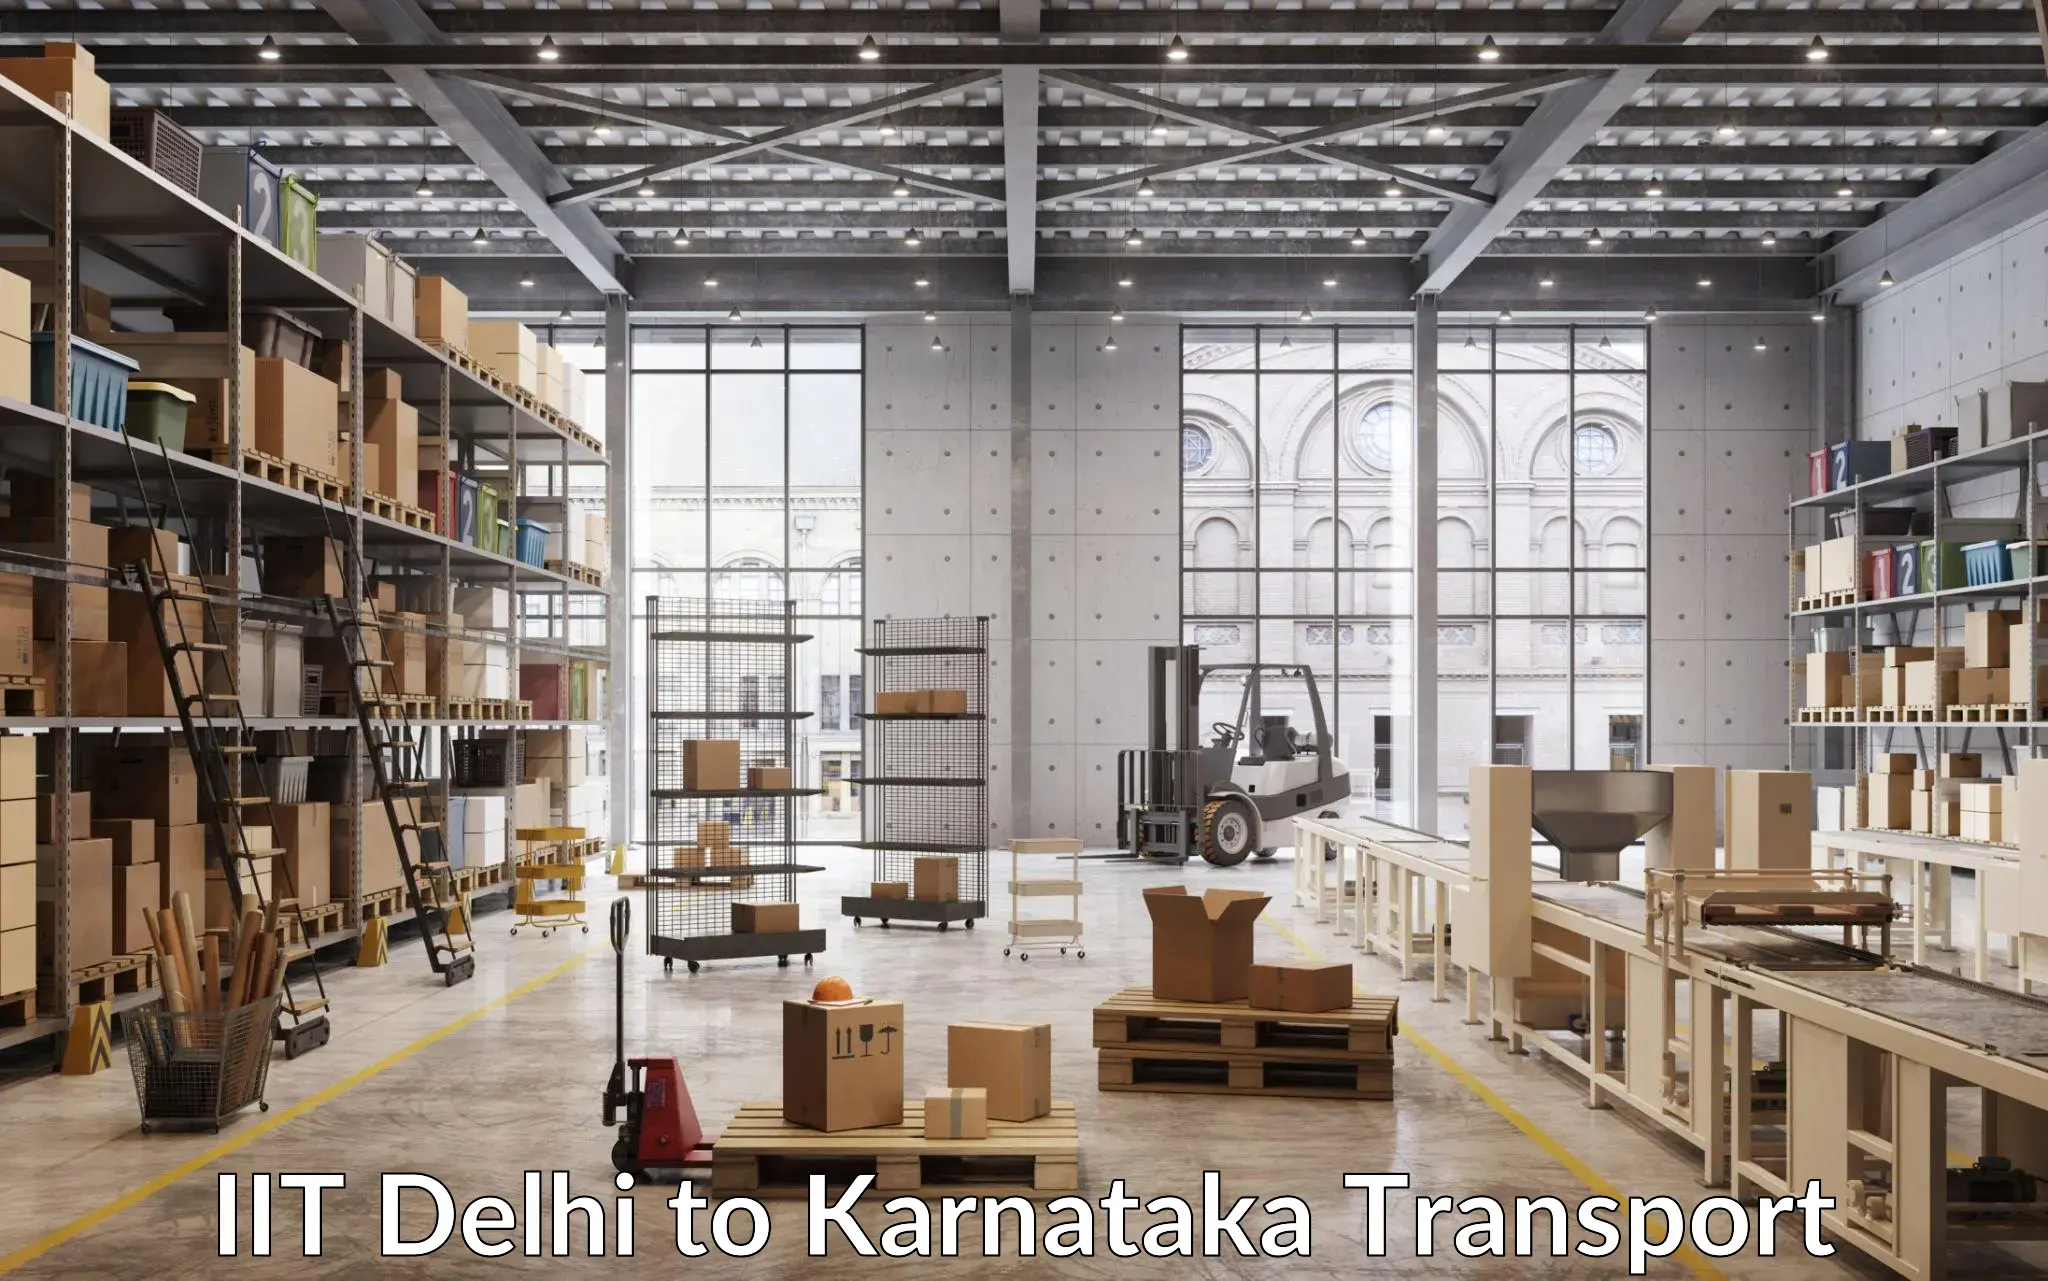 Air freight transport services IIT Delhi to Karnataka